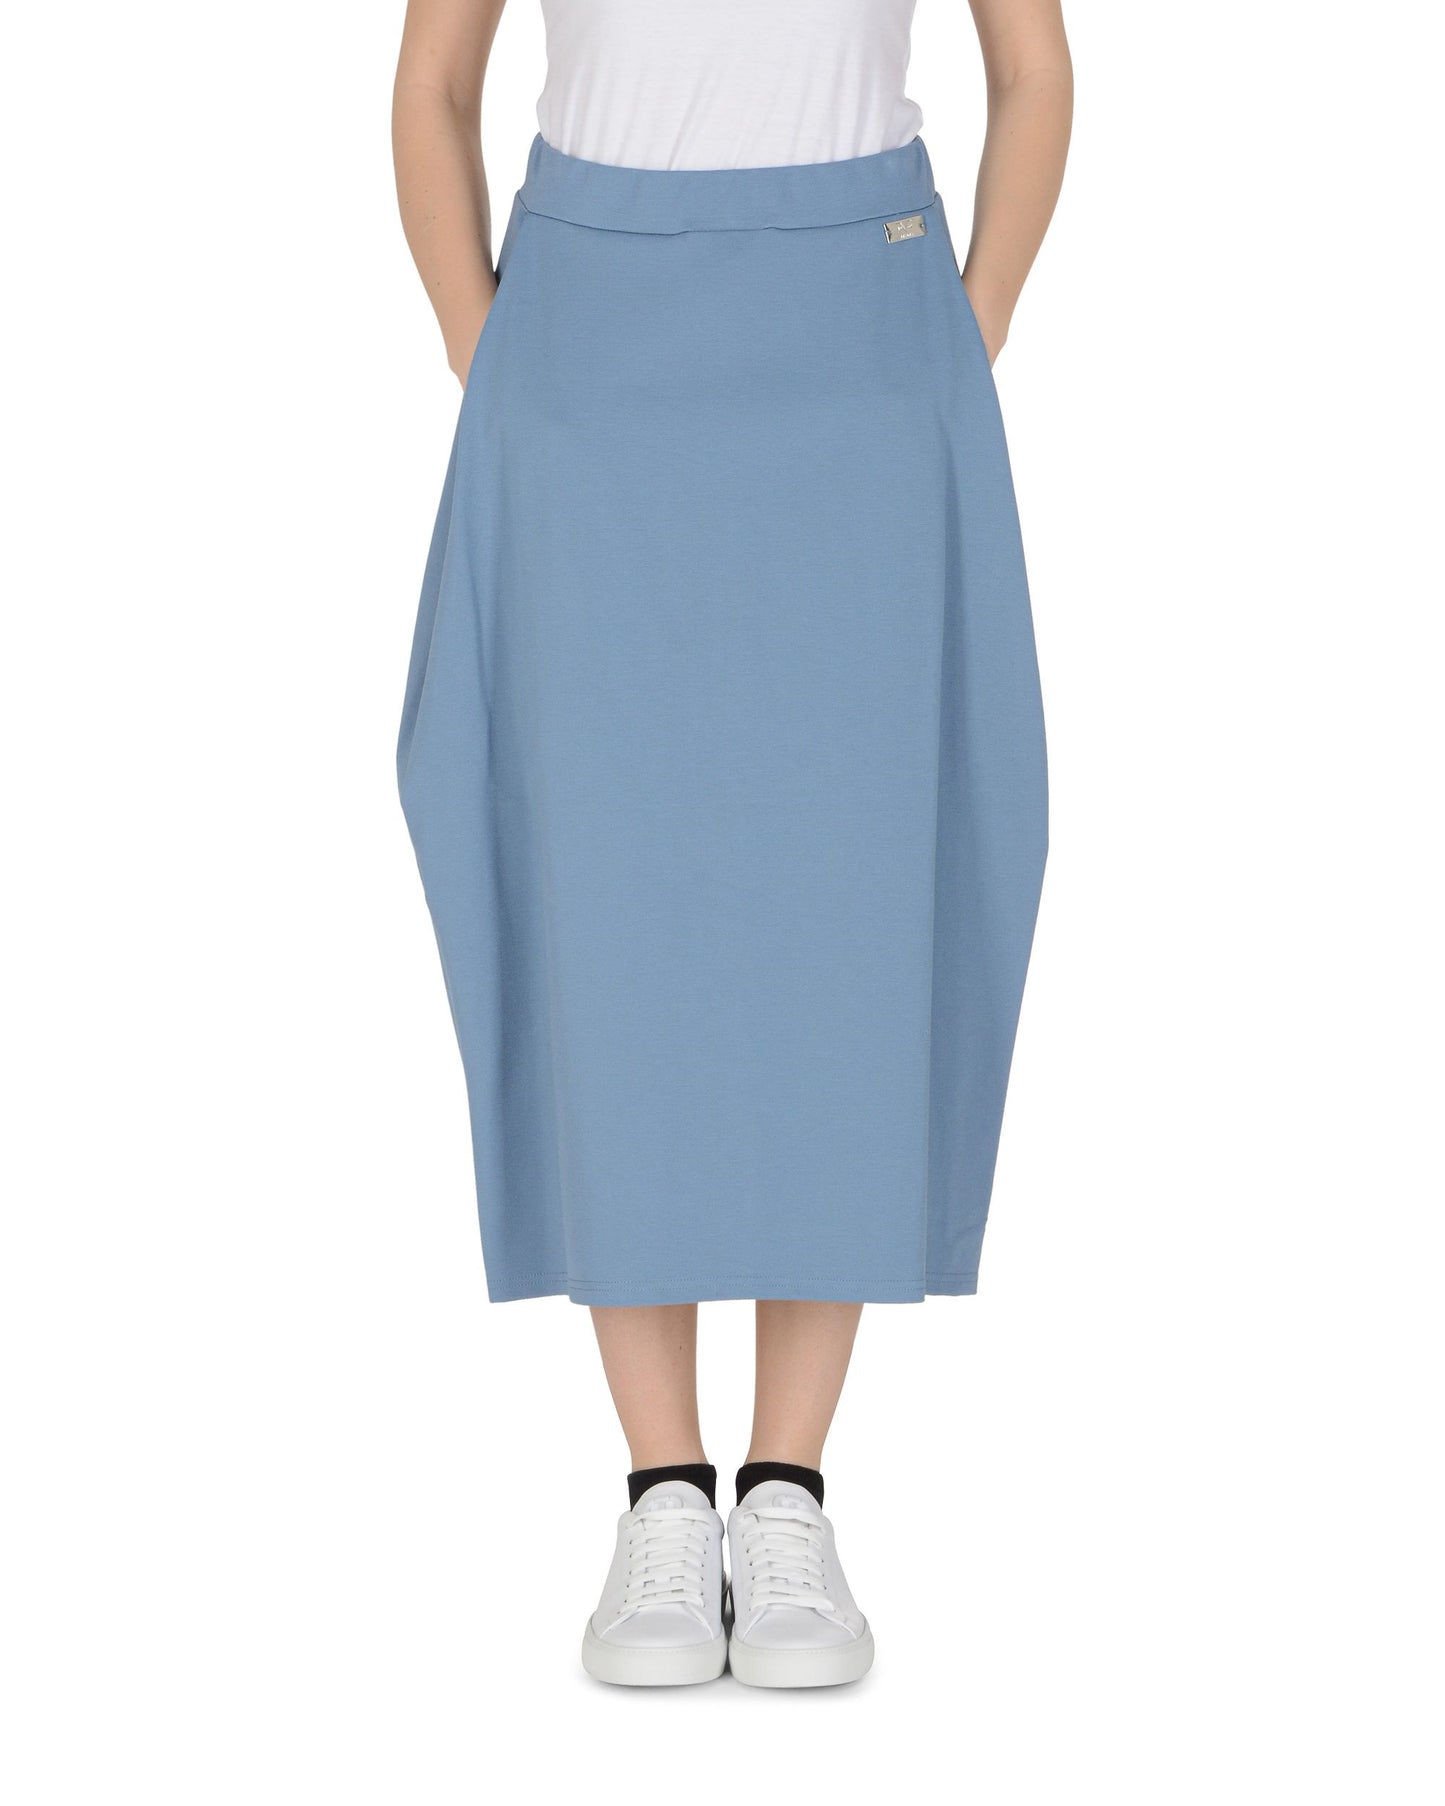 19V69 Italia Womens Skirt Light Blue BAMBI LIGHT BLUE